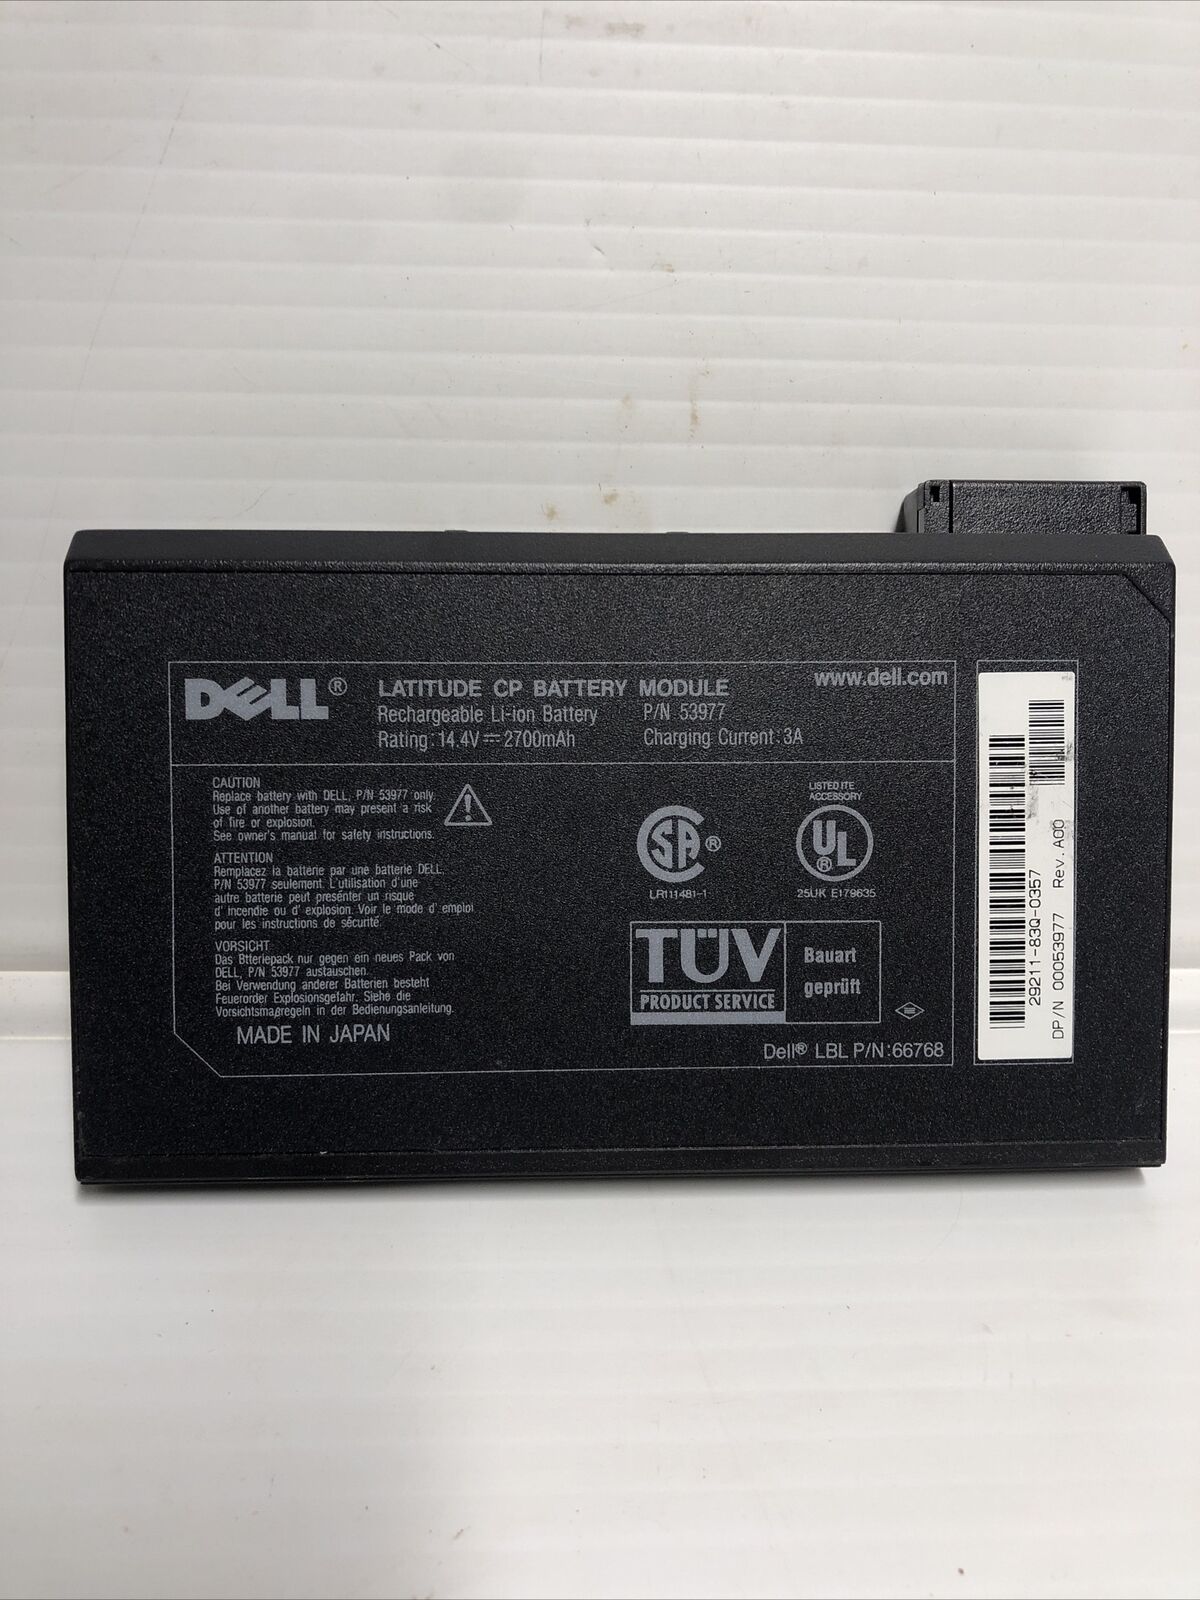 Dell latitude CP battery Module 53977